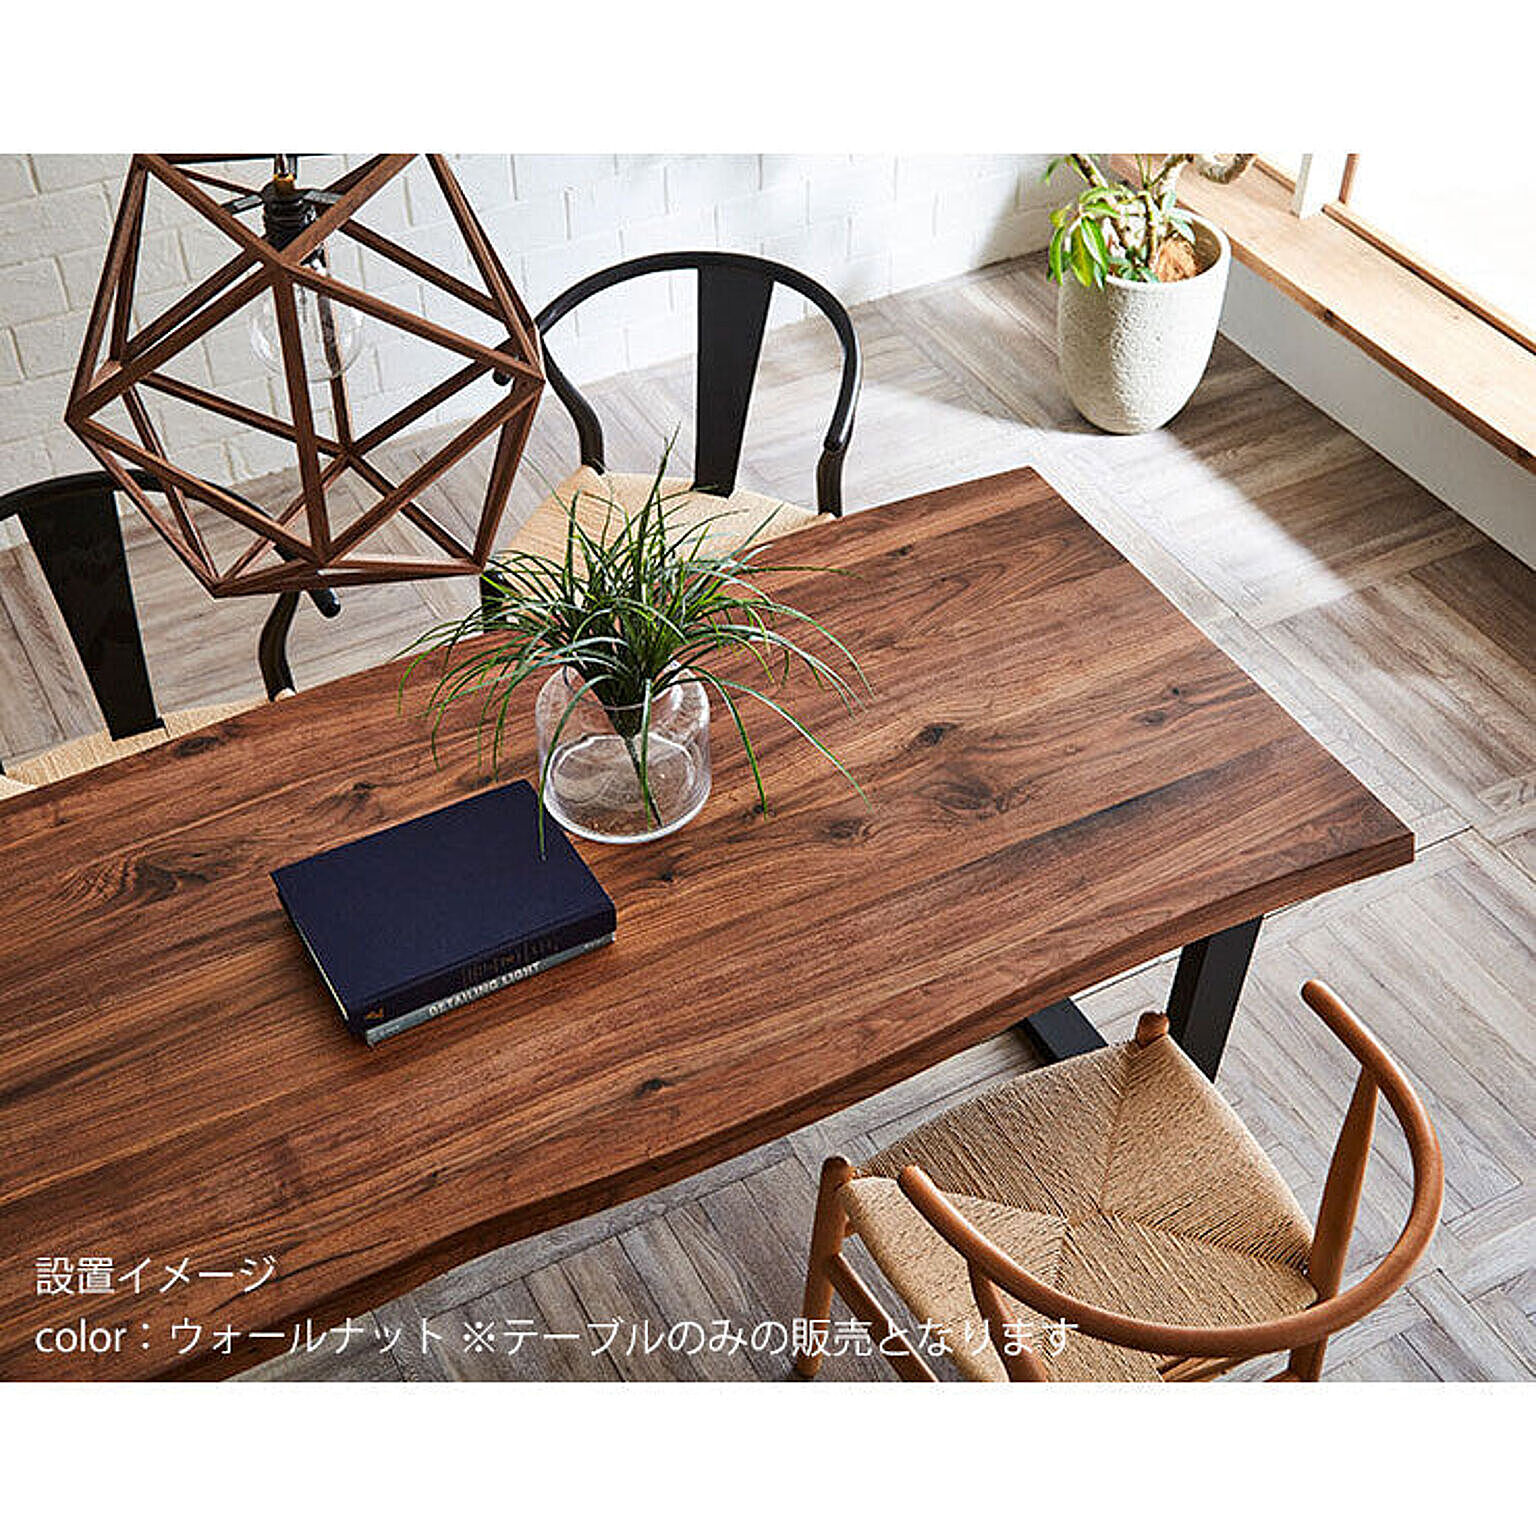 テーブル単品 一枚板風 天然木 ダイニング 無垢材継ぎ継ぎ一枚板風テーブル 耳付き テーブルのみ 幅210cm